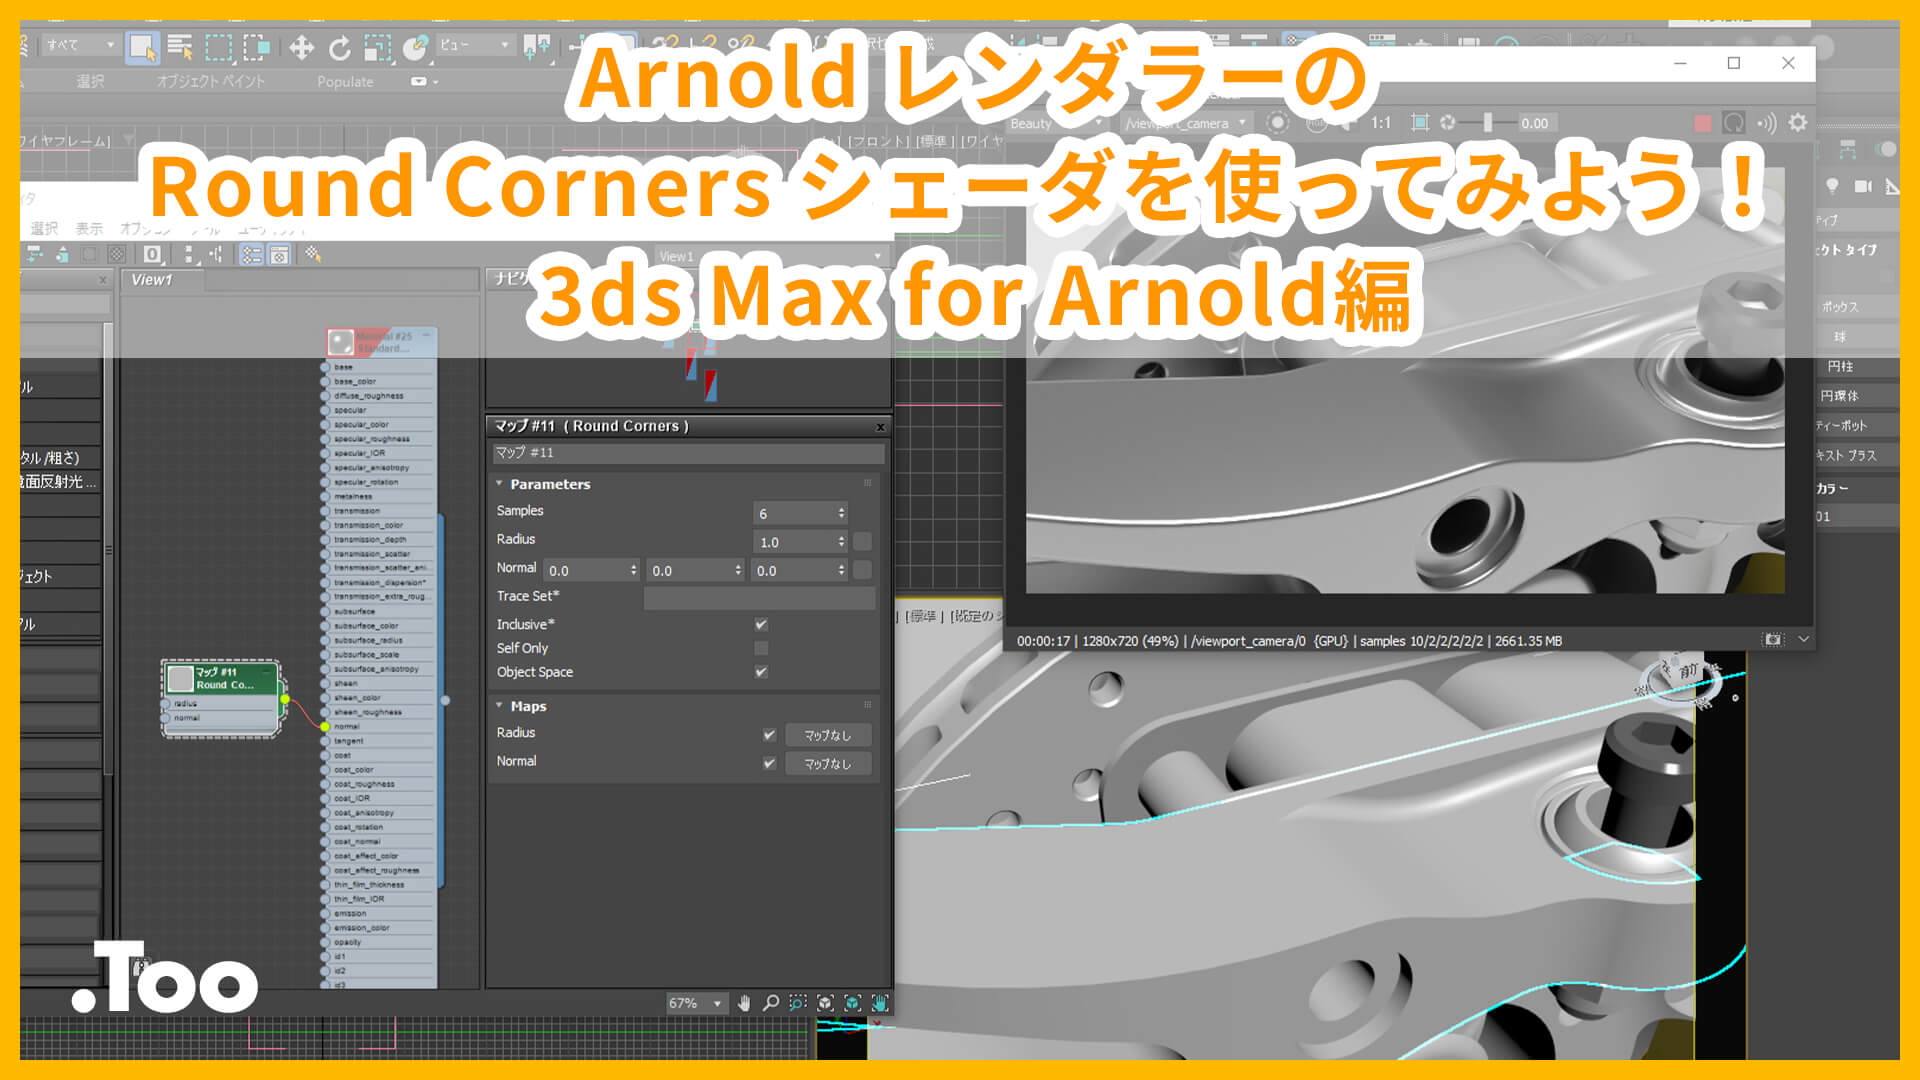 Arnold レンダラーのRound Corners シェーダを使ってみよう！ 3ds Max for Arnold編